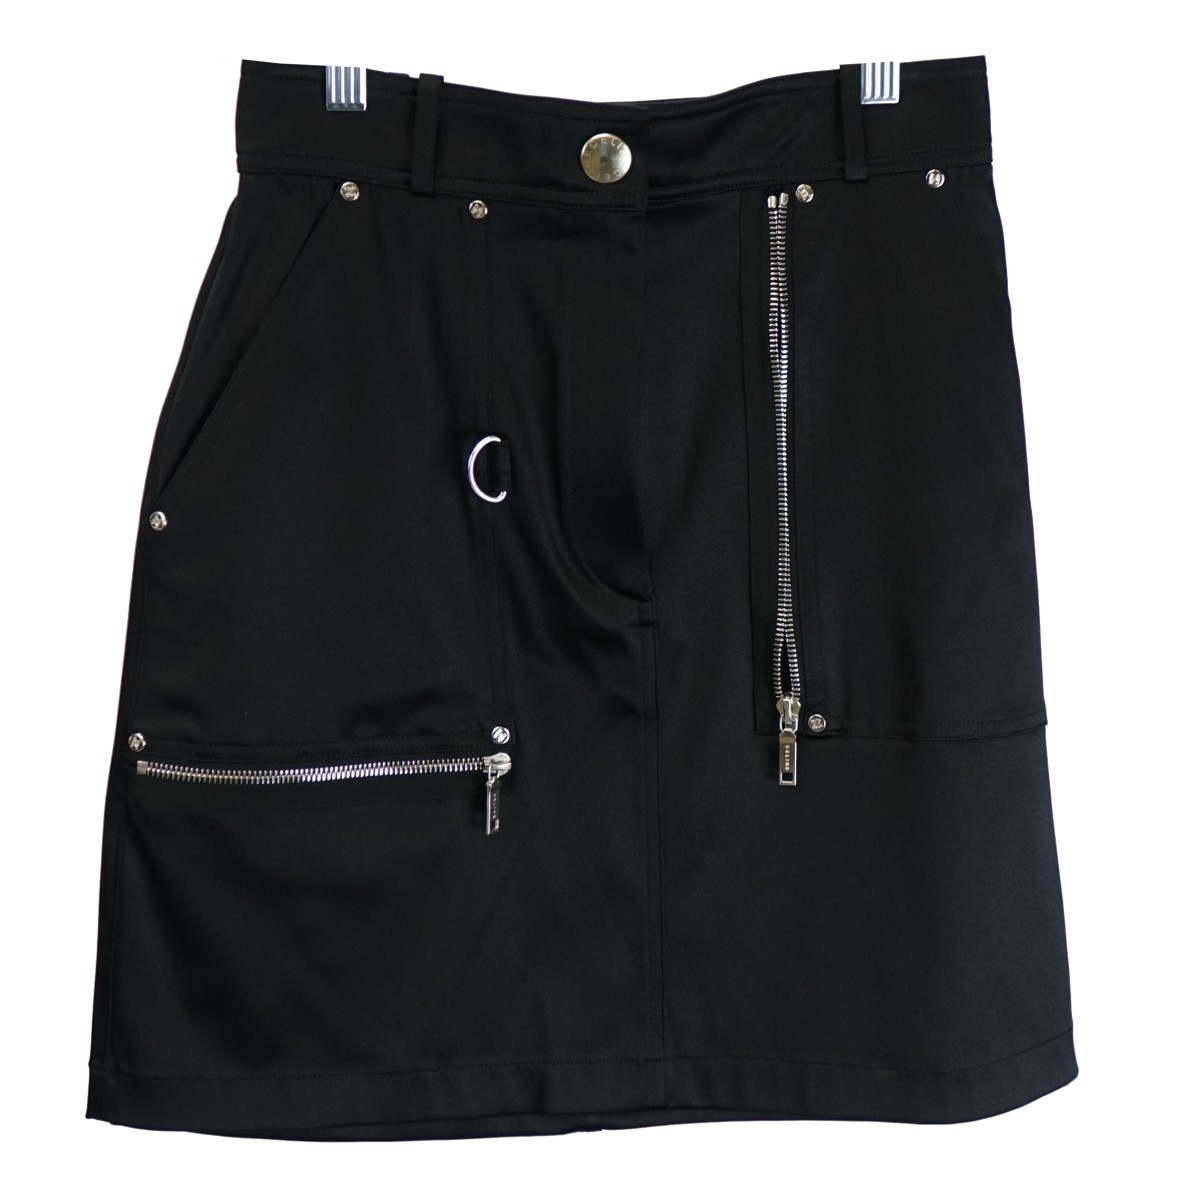 Celine Black Short Skirt